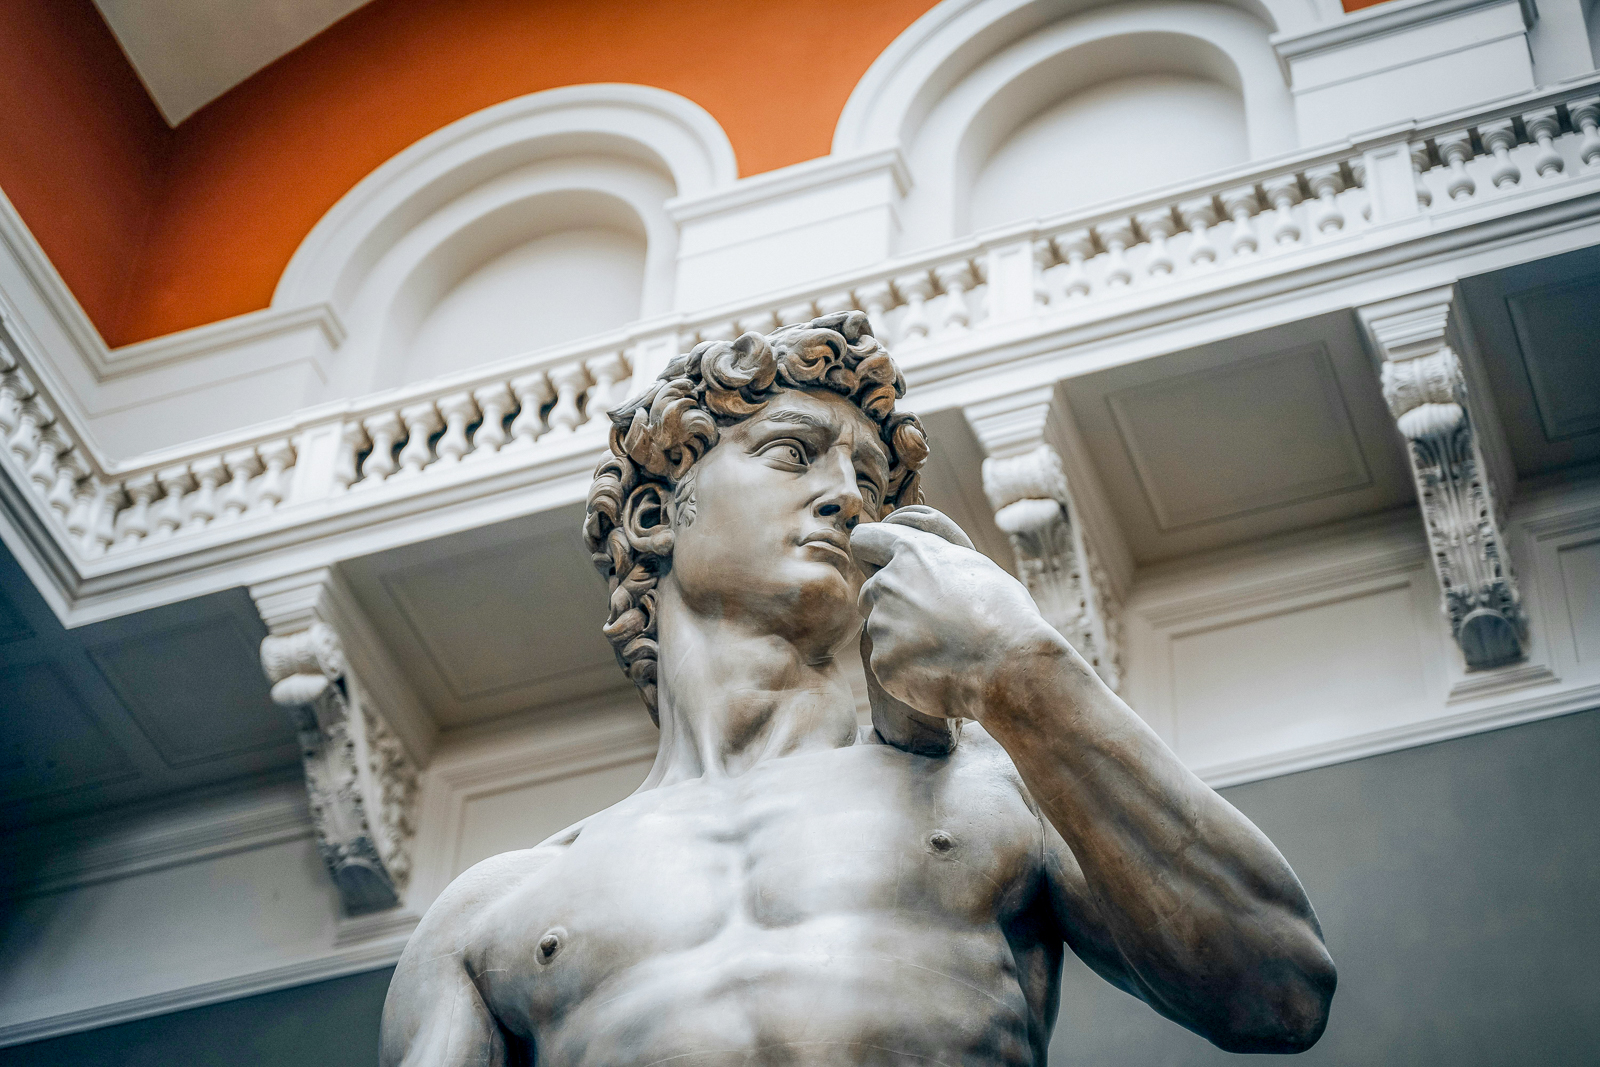 Michelangelo's David sculpture